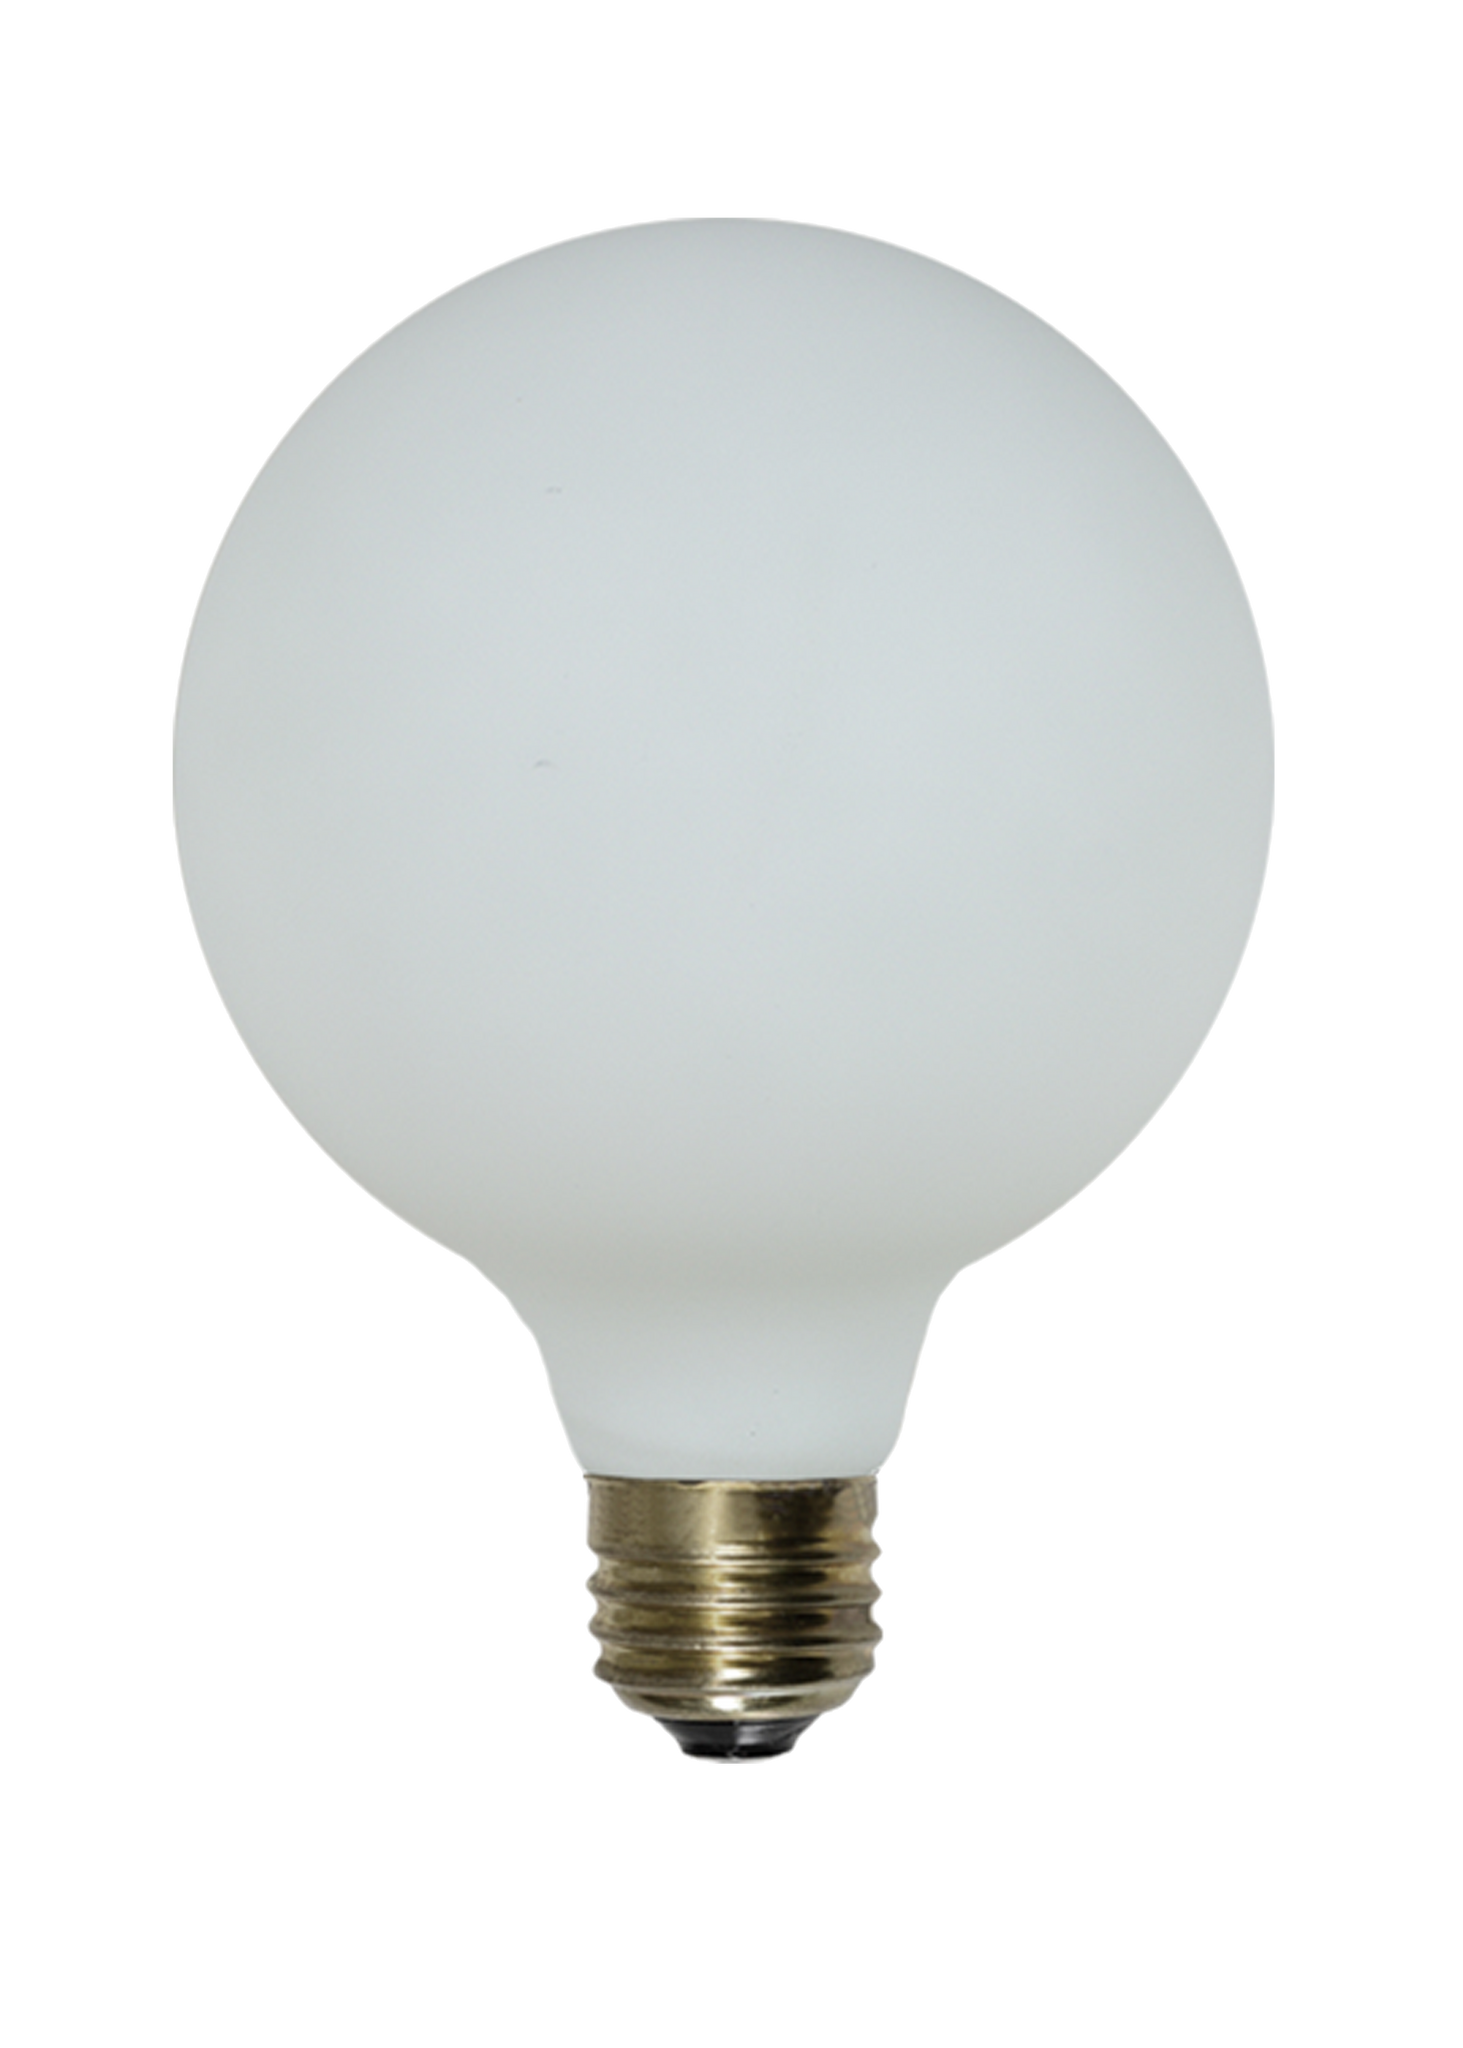 Bulb: LED - Porcelain Matte White 5" Globe